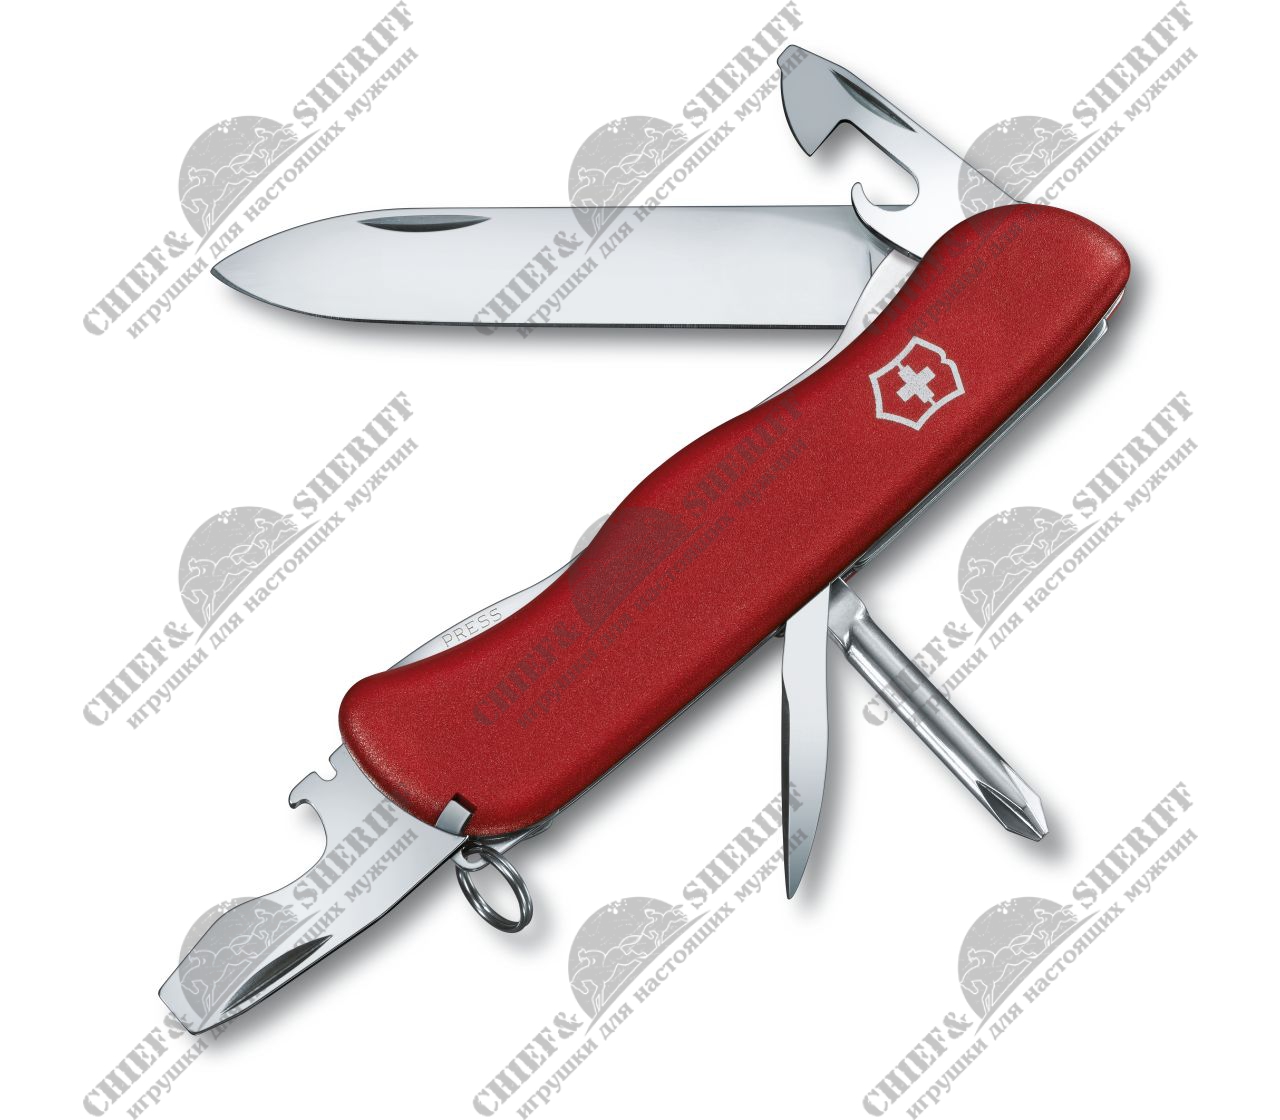 Нож перочинный Victorinox Adventurer,111 мм, 11 функций, красный, 0.8453